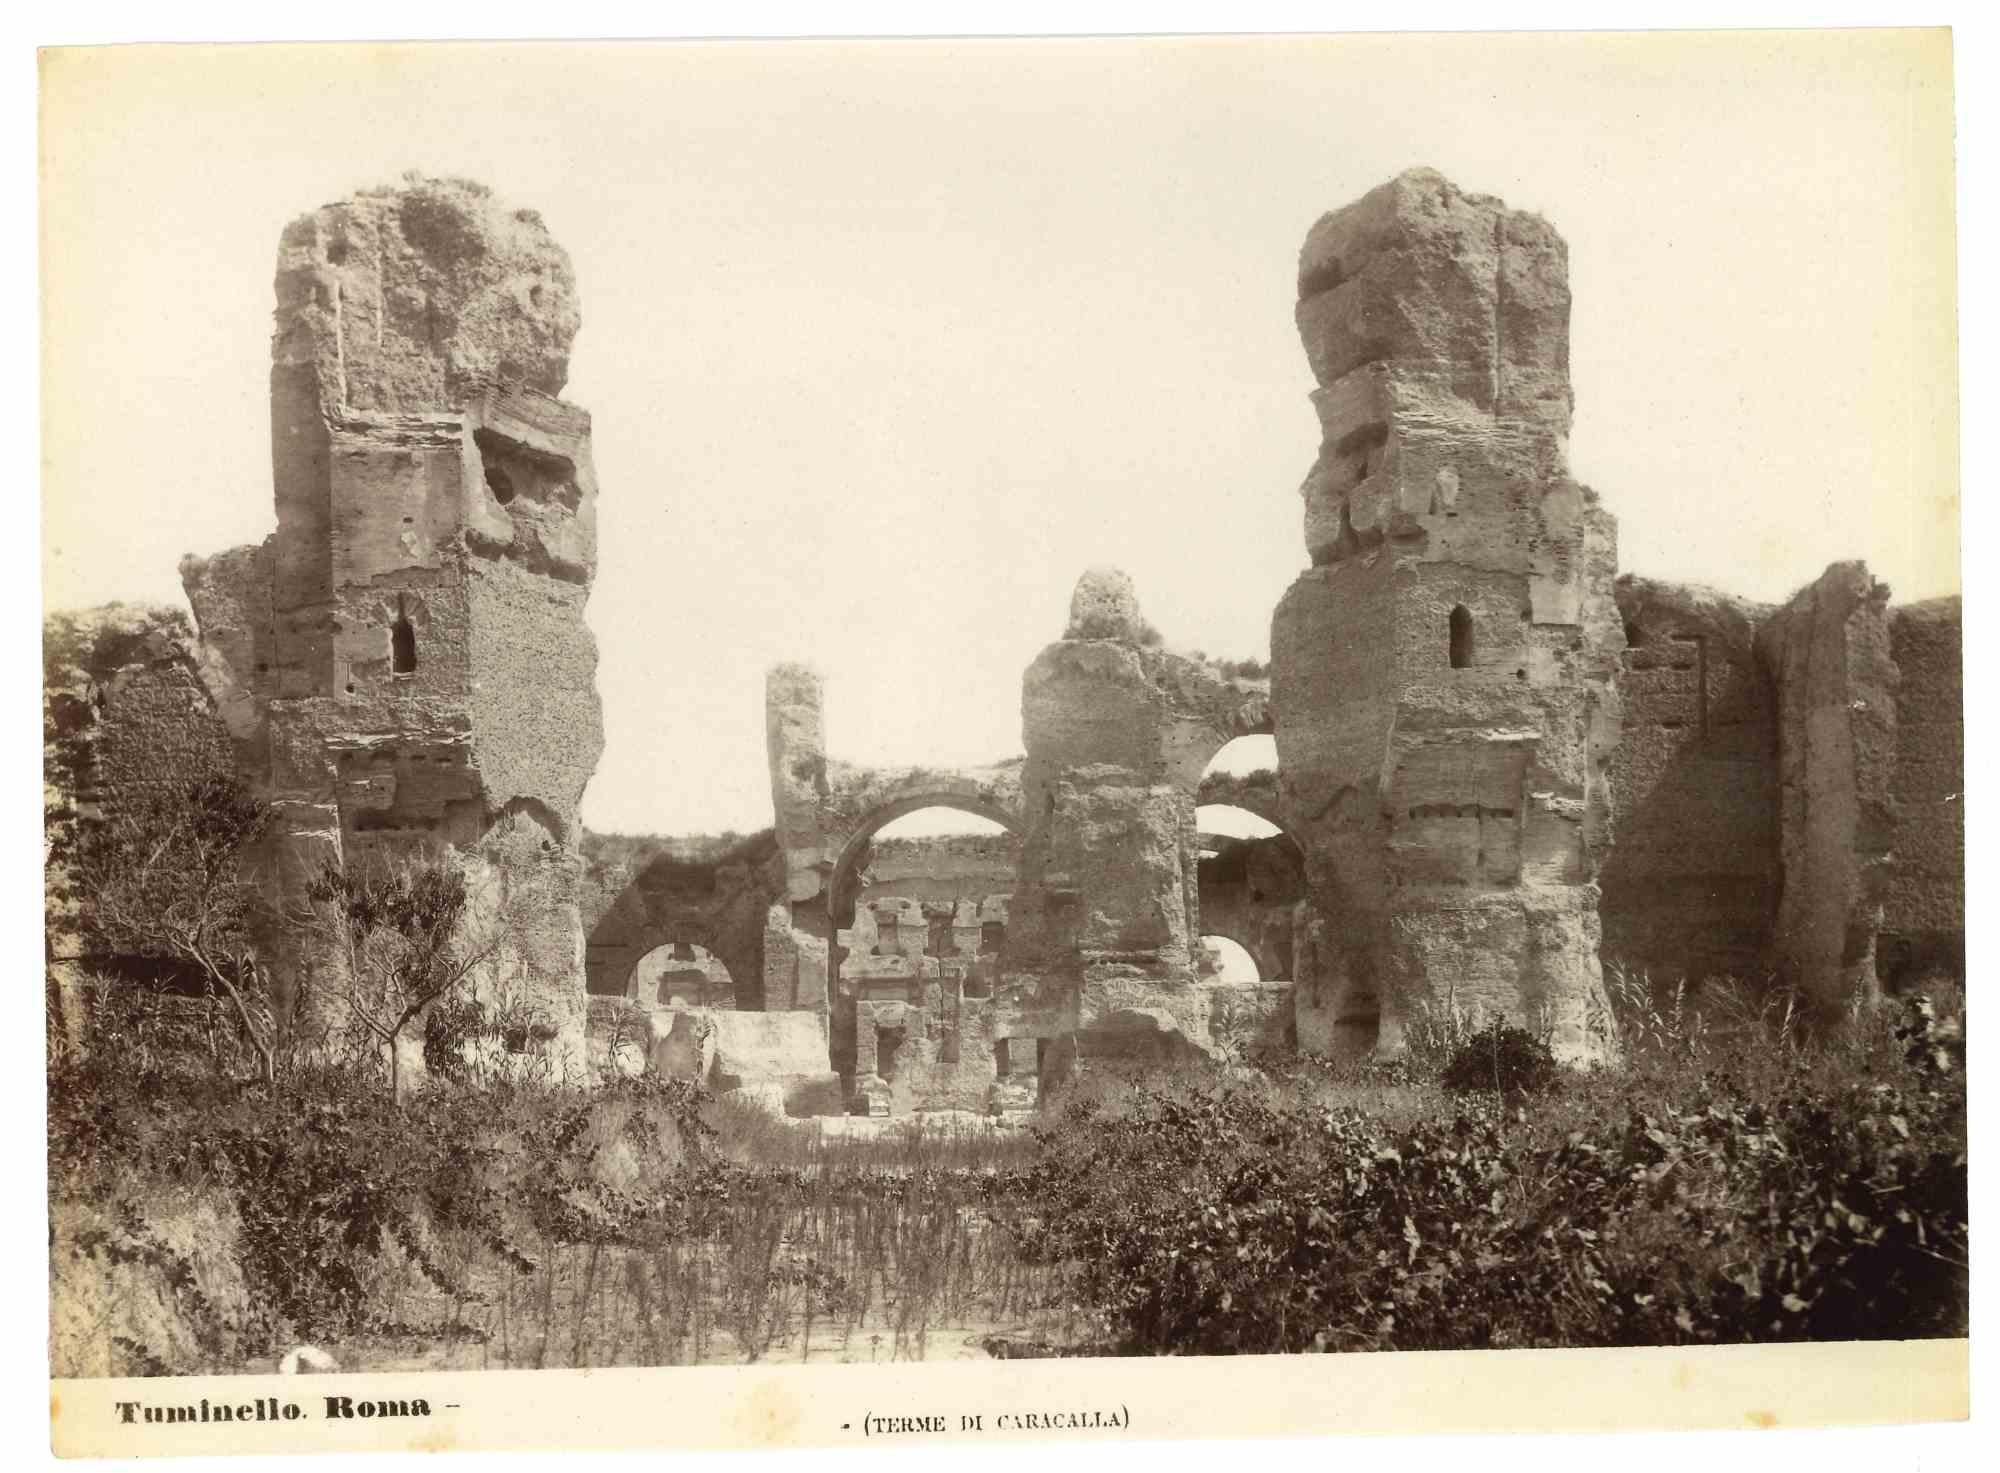 Landscape Photograph Lodovico Tuminello - Bagues de Caracalla - Photographie vintage L. Tuminello - Début du XXe siècle